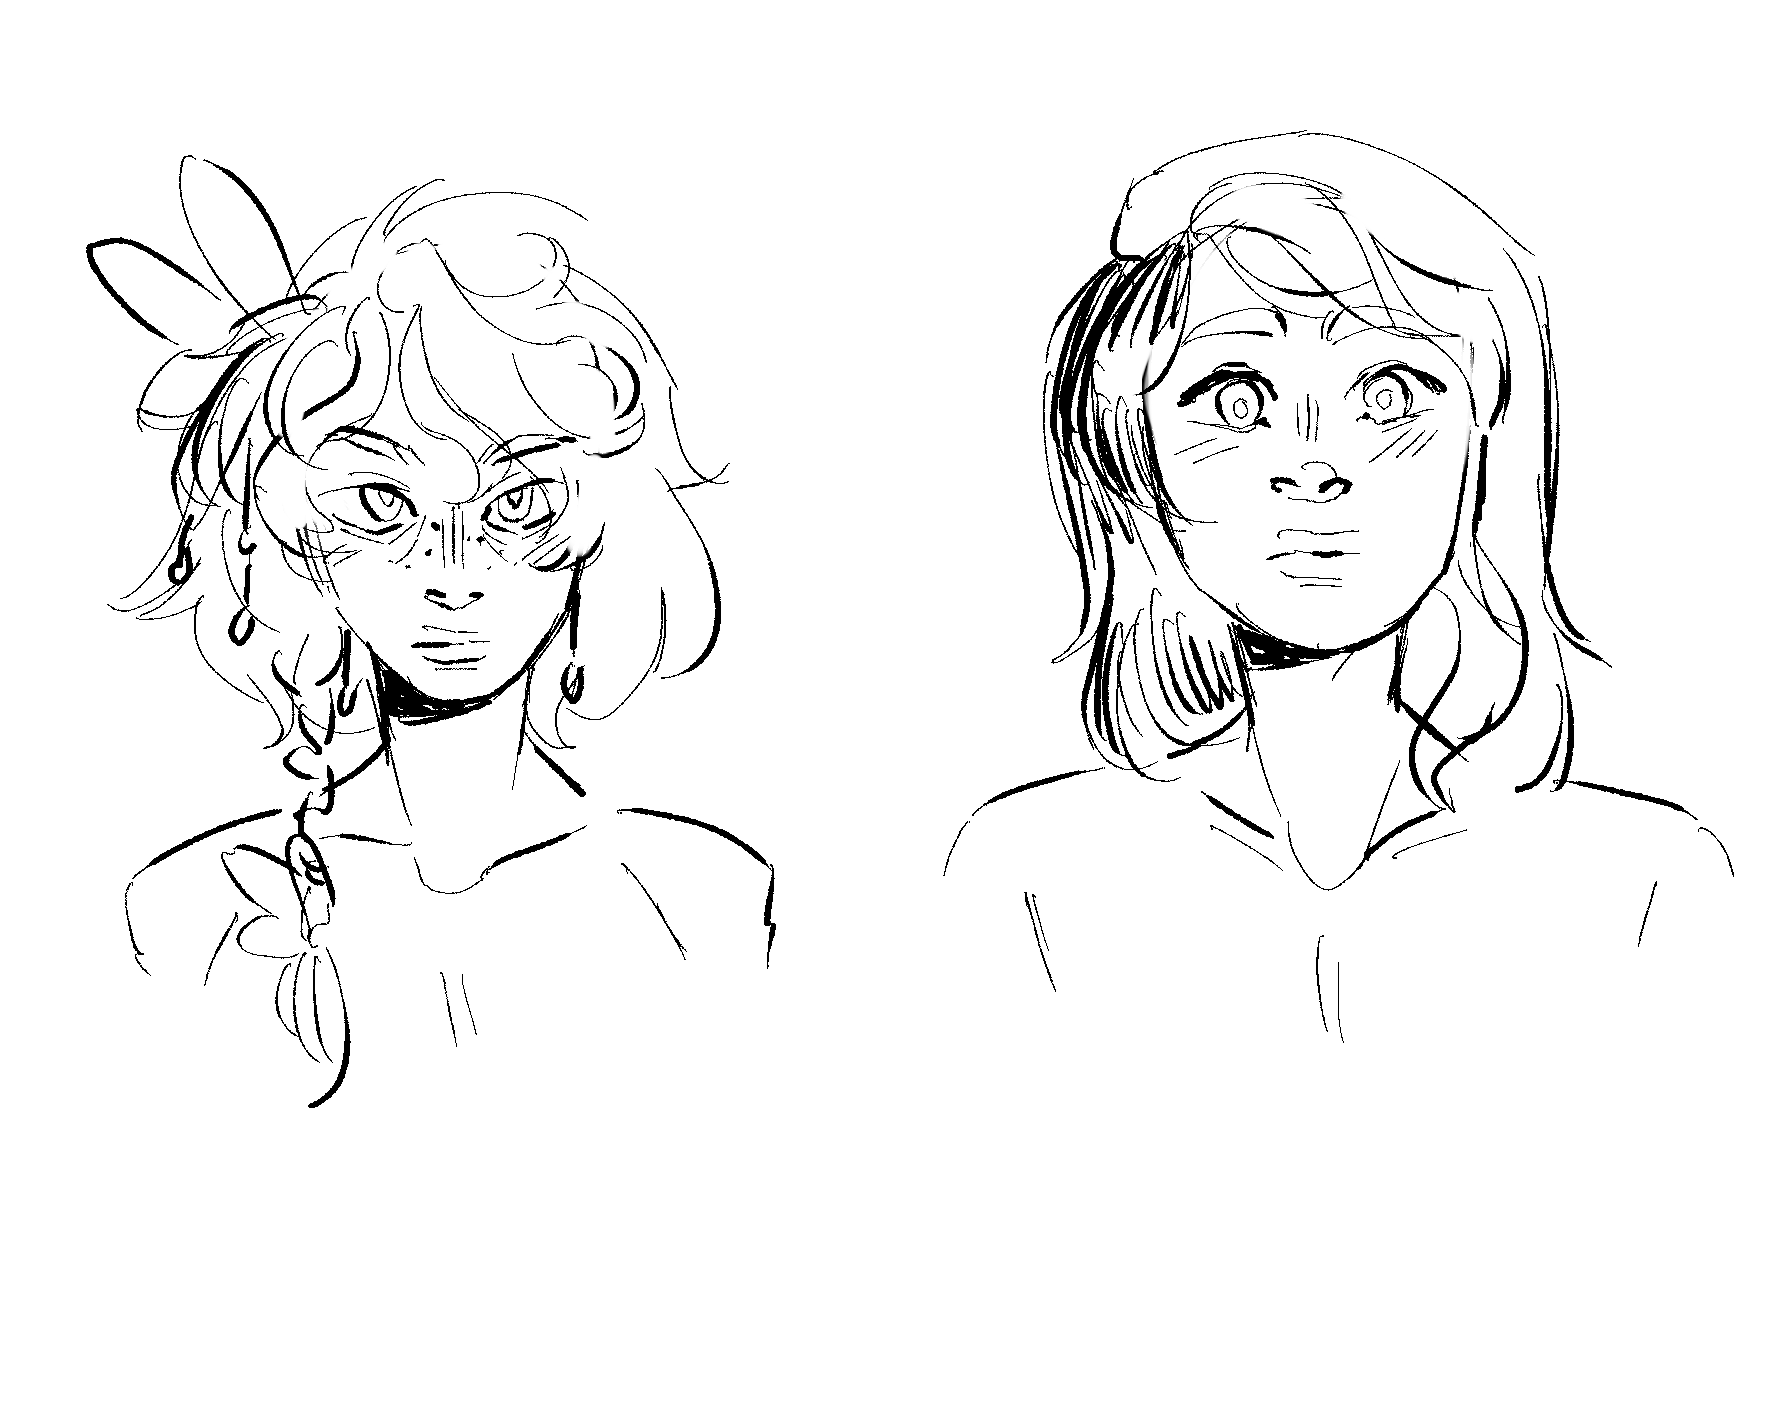 Vi and Maya sketch